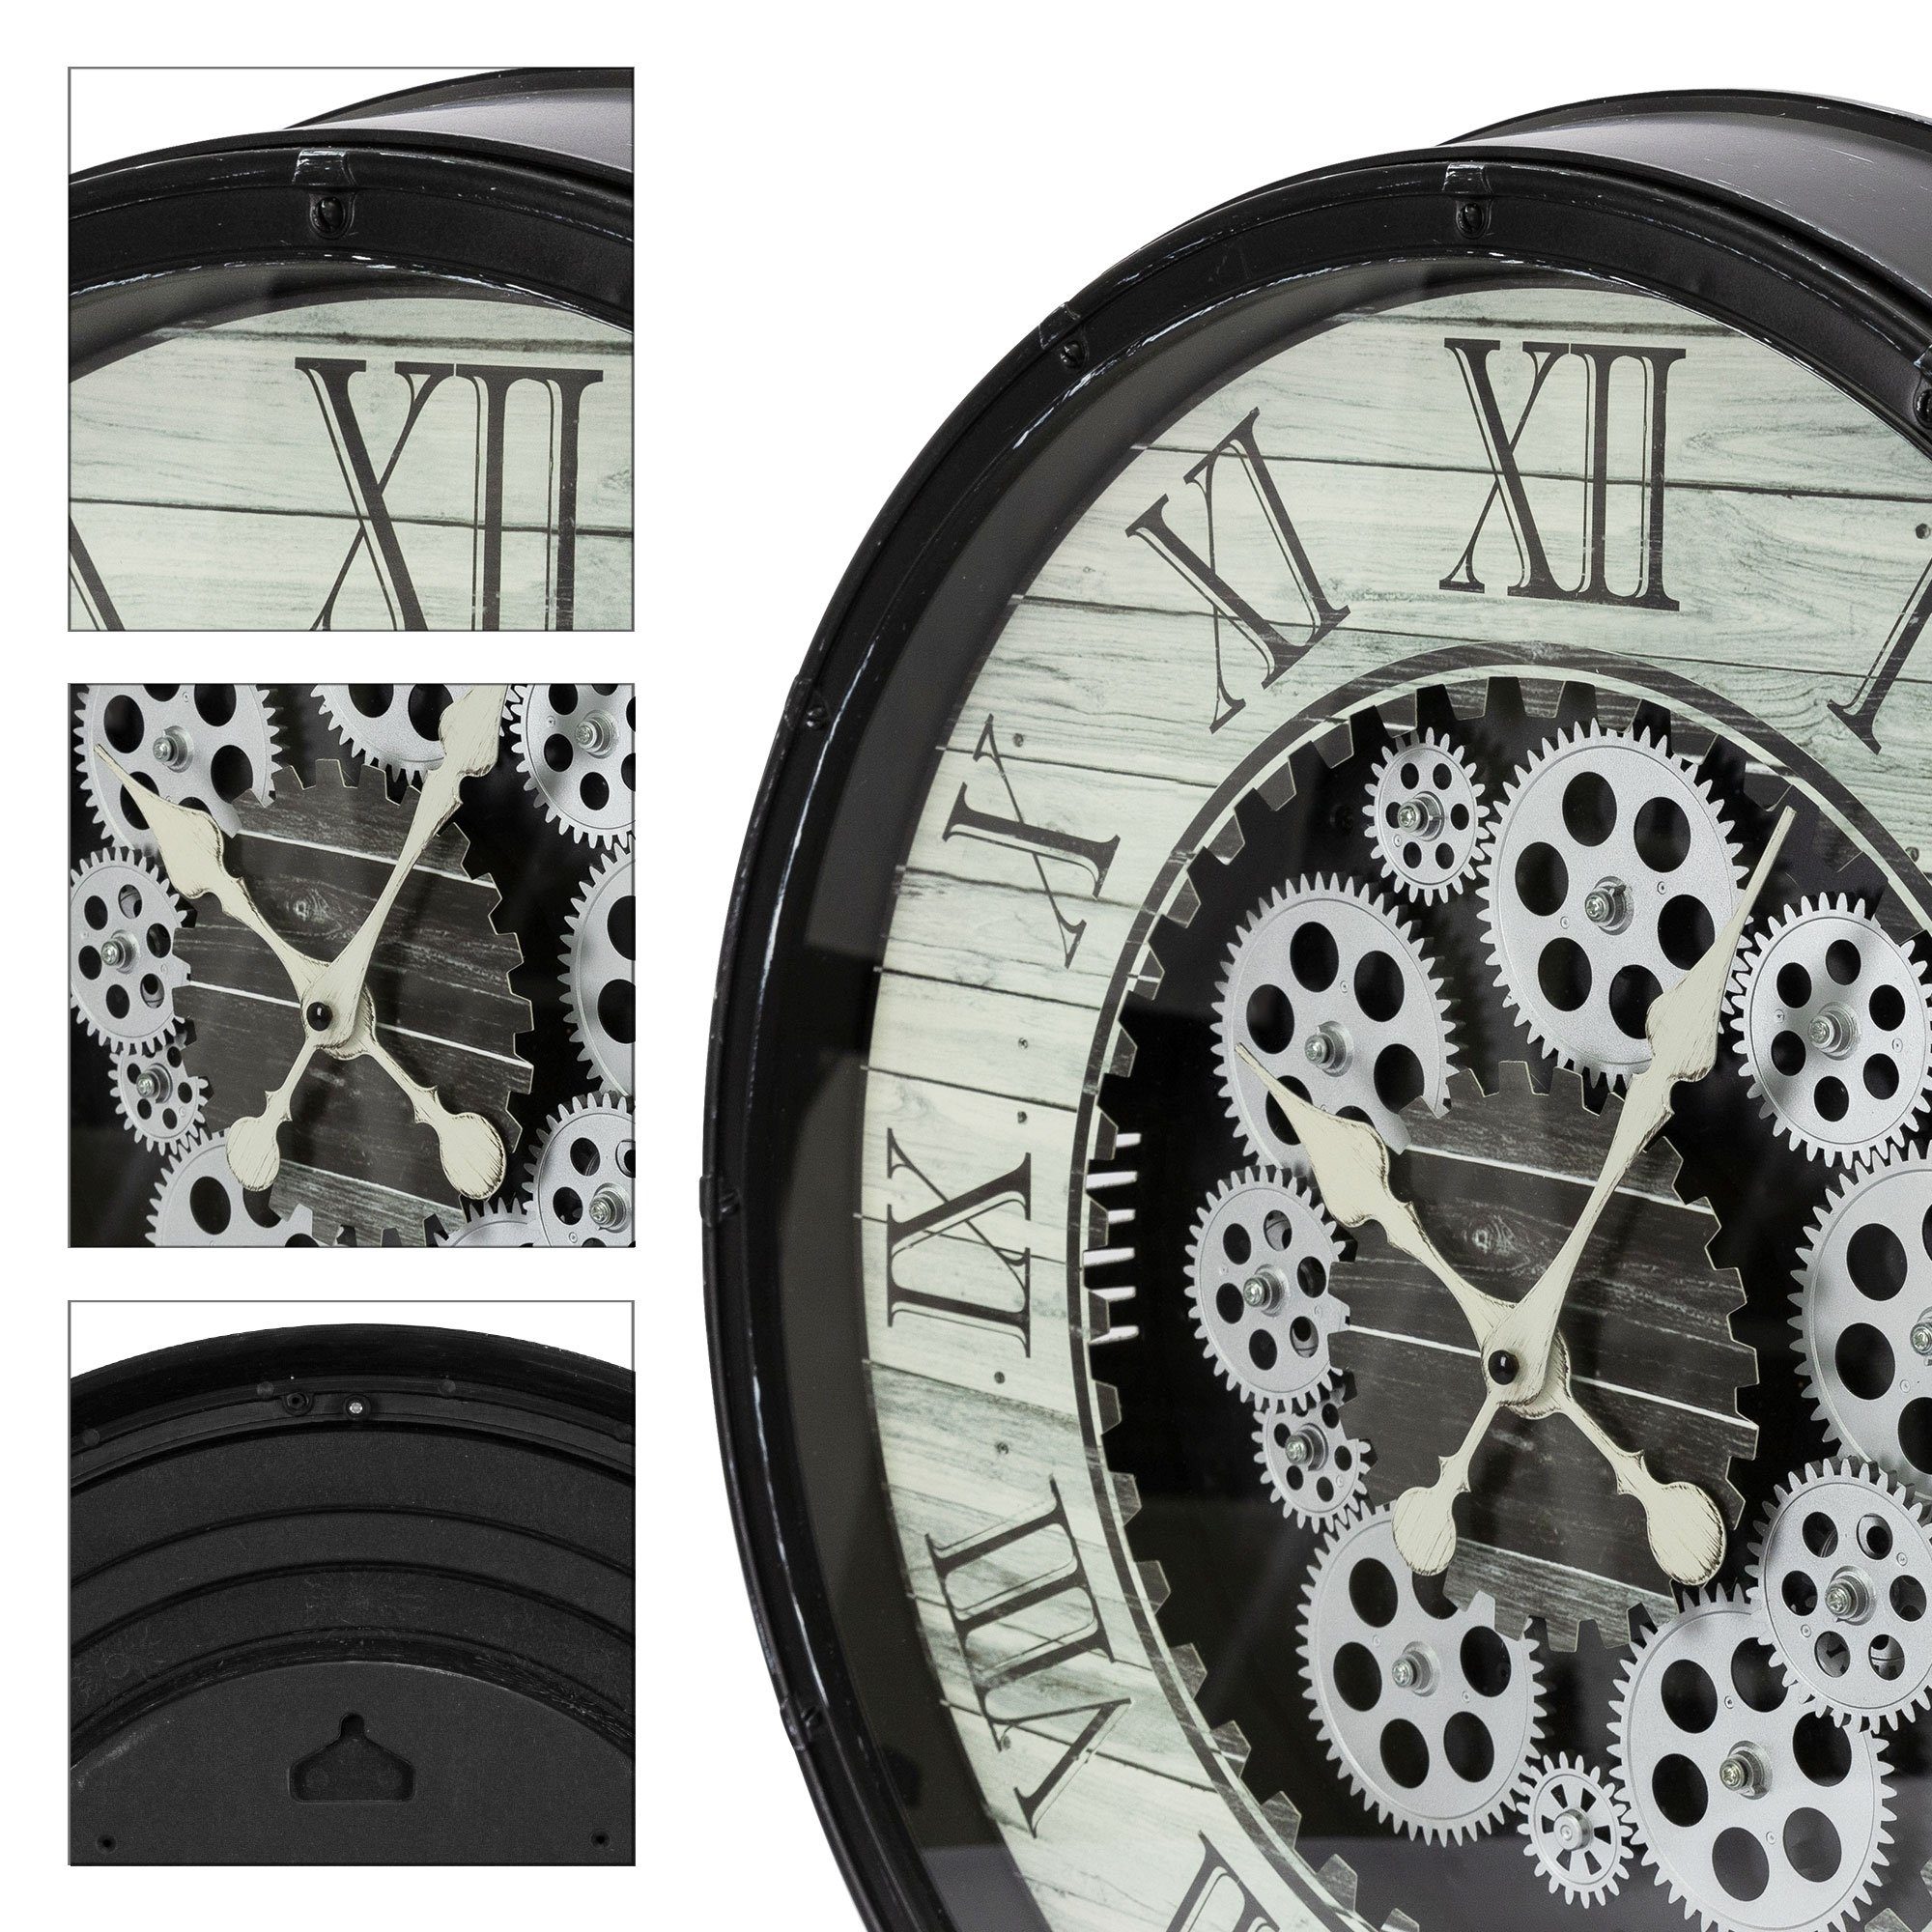 Uhr Leise Römische Design Industriell Ø48cm ECD Zahlen Wanduhr Uhr Analoge) MDF-Holz Schwar Dekor Germany (Rund Dekorative